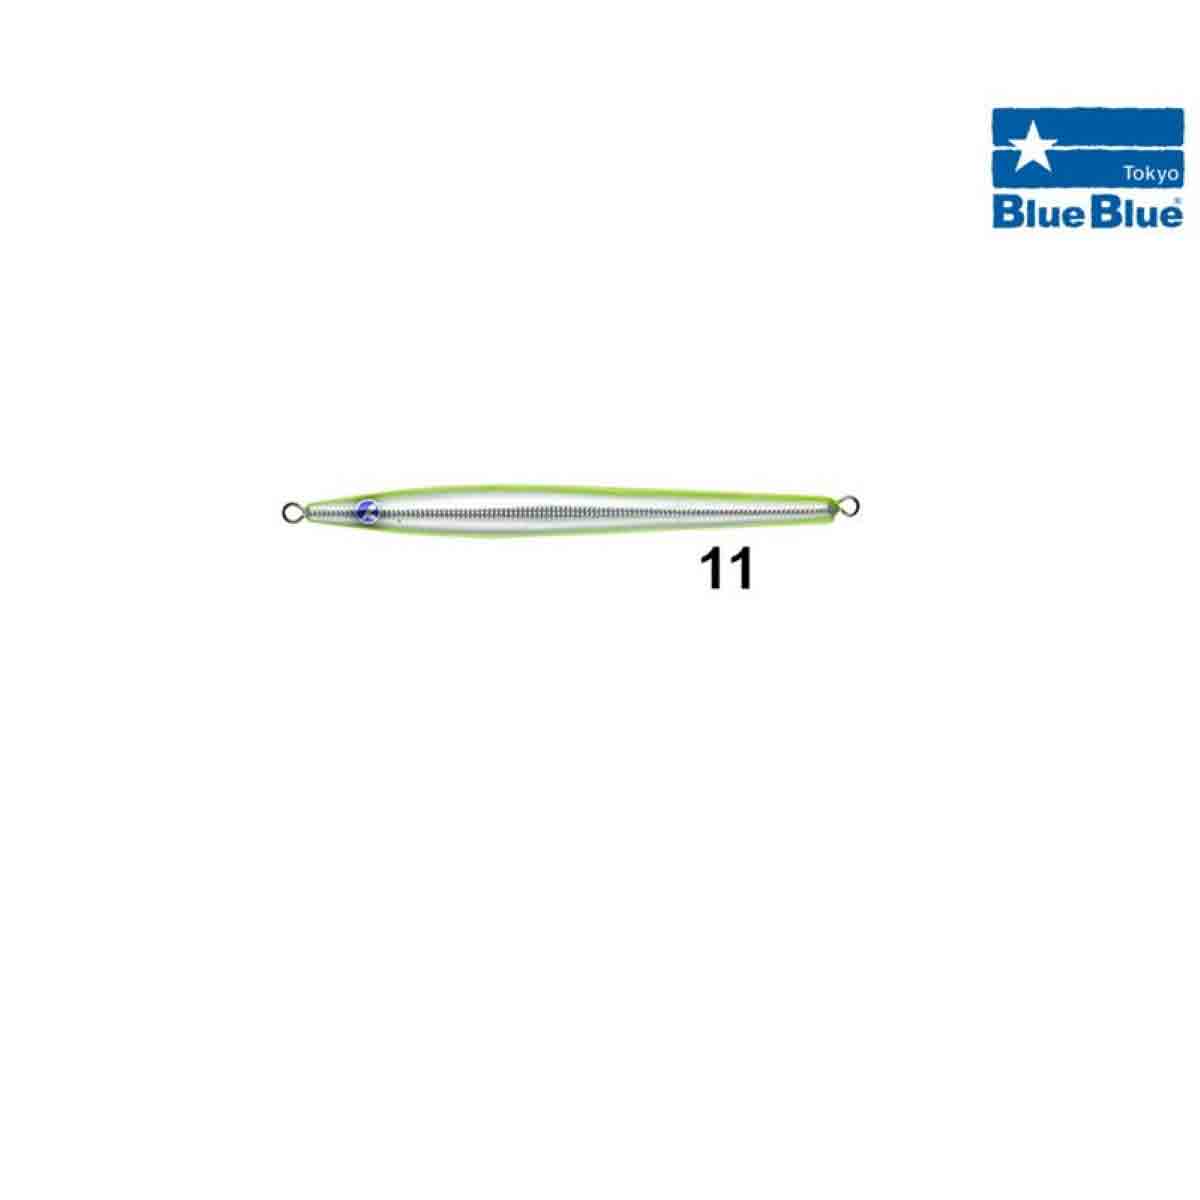 BlueBlue Conifer Jig Yem 250 Gram,blueblue kalitesinde vertical jigging avlarınızda ve kıyıdan shore jig avlarınızda gönül rahatlığı ile kullanabileceğiniz jig yem serisi